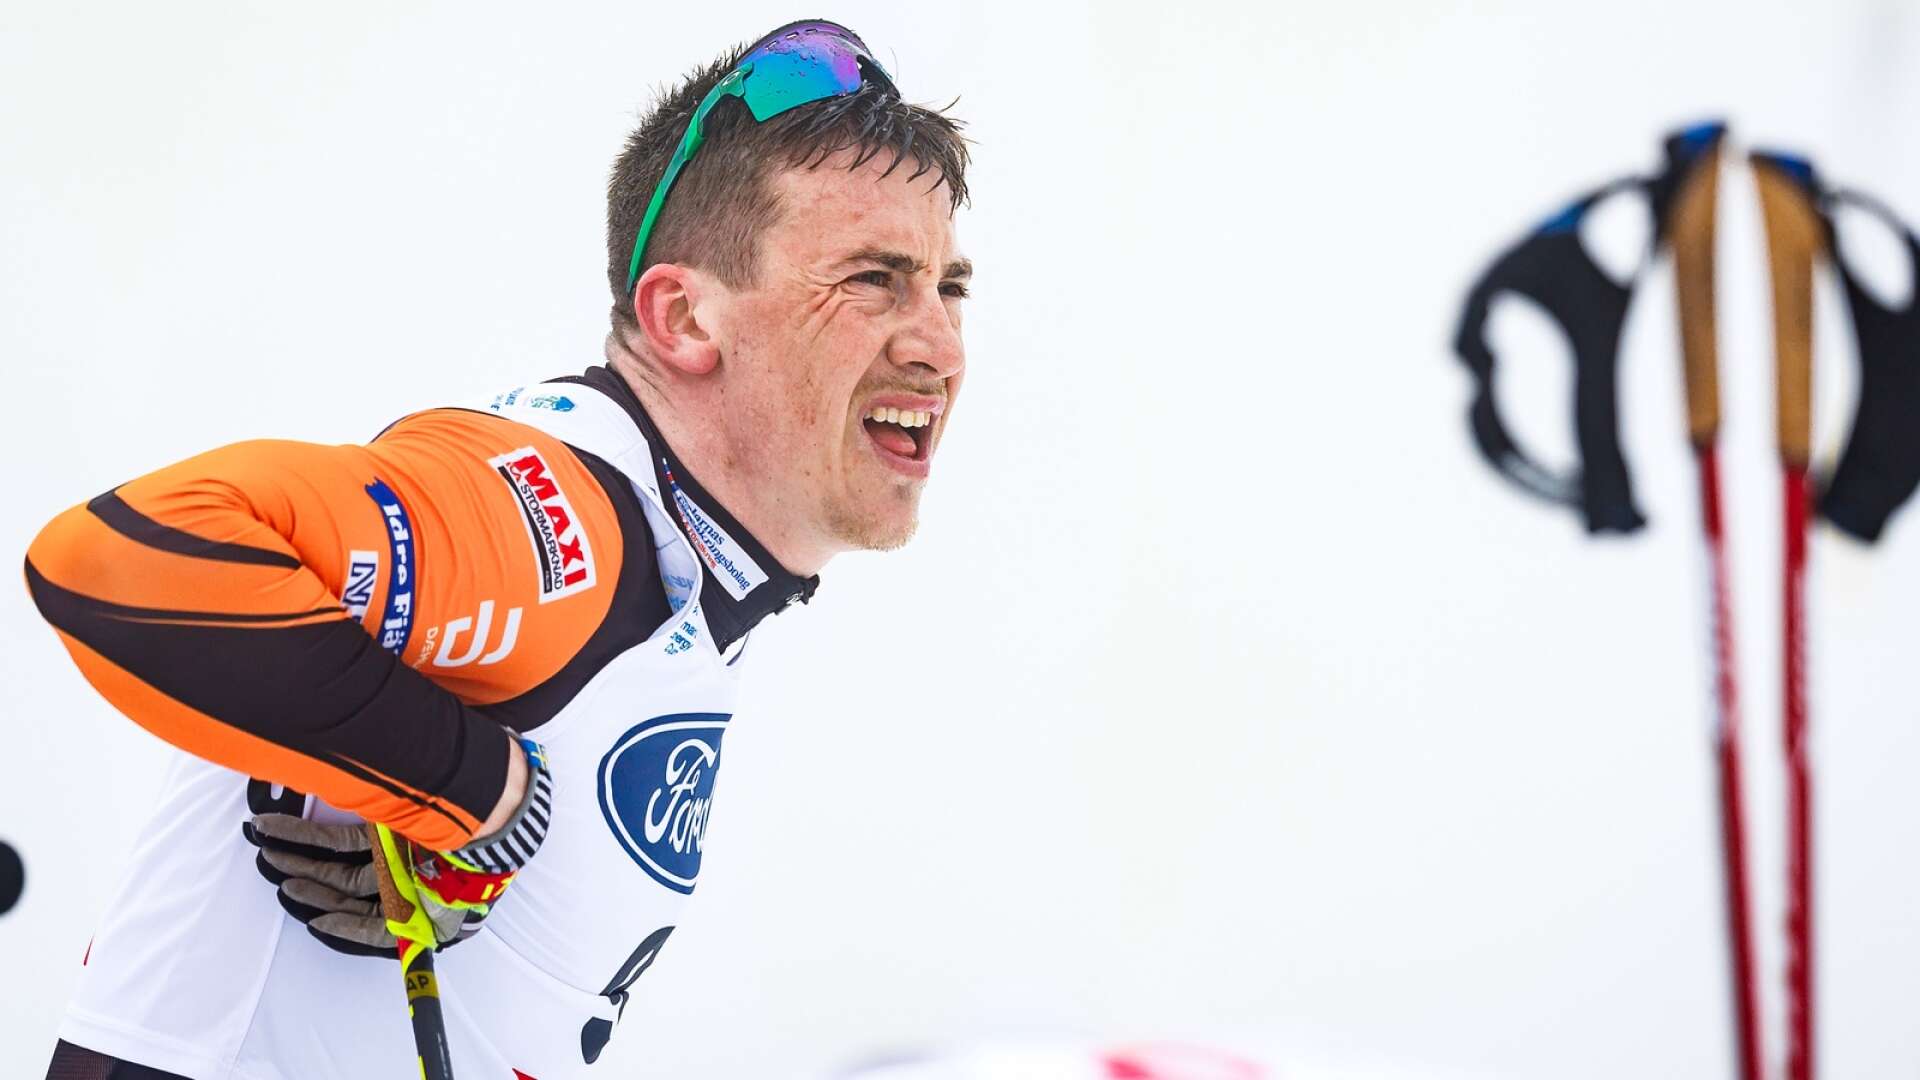 Anton Persson avslutade säsongen med seger på 15 kilometer i Sverigecupen i Sollefteå för knappt två veckor sedan. Nu funderar skidåkaren från Torsby på om det blir någon satsning nästa vinter.